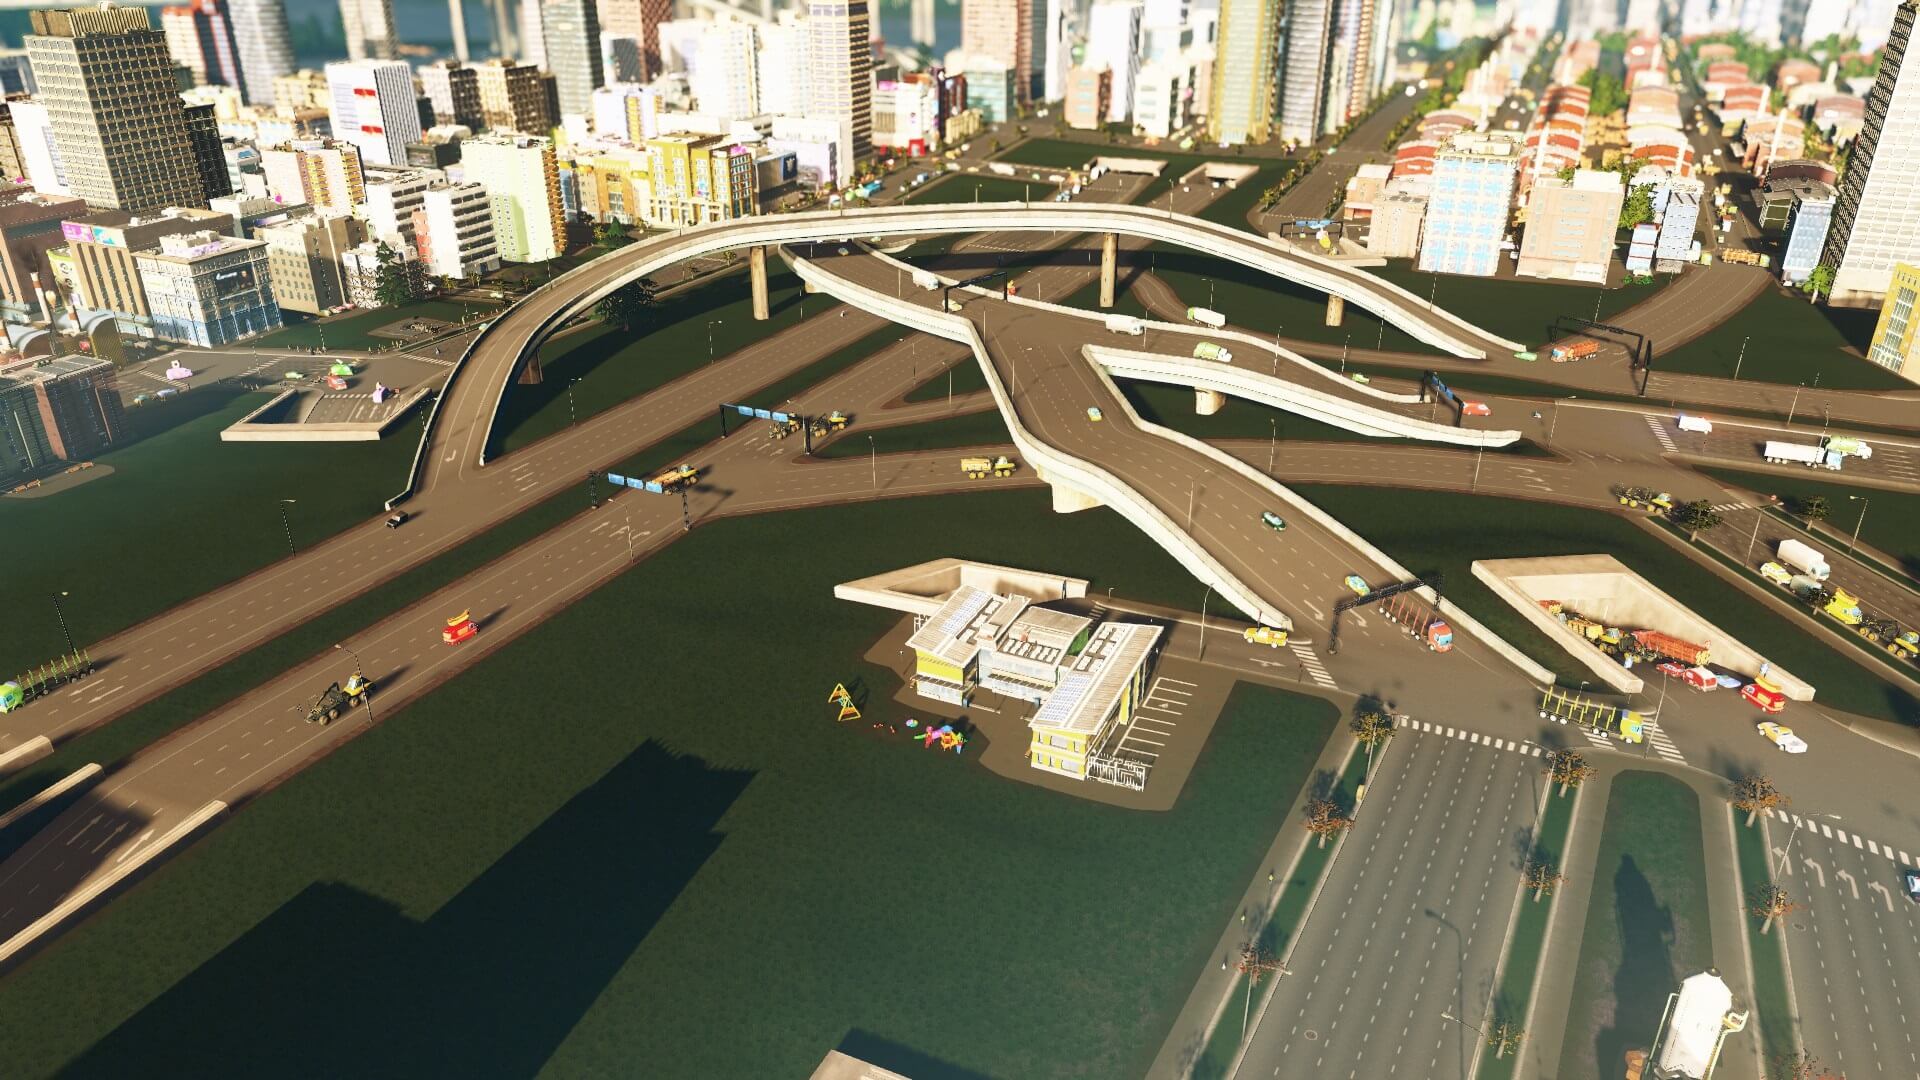 シティーズスカイライン 攻略ブログ 高速道路を地下に埋設して渋滞解消 Game Play360